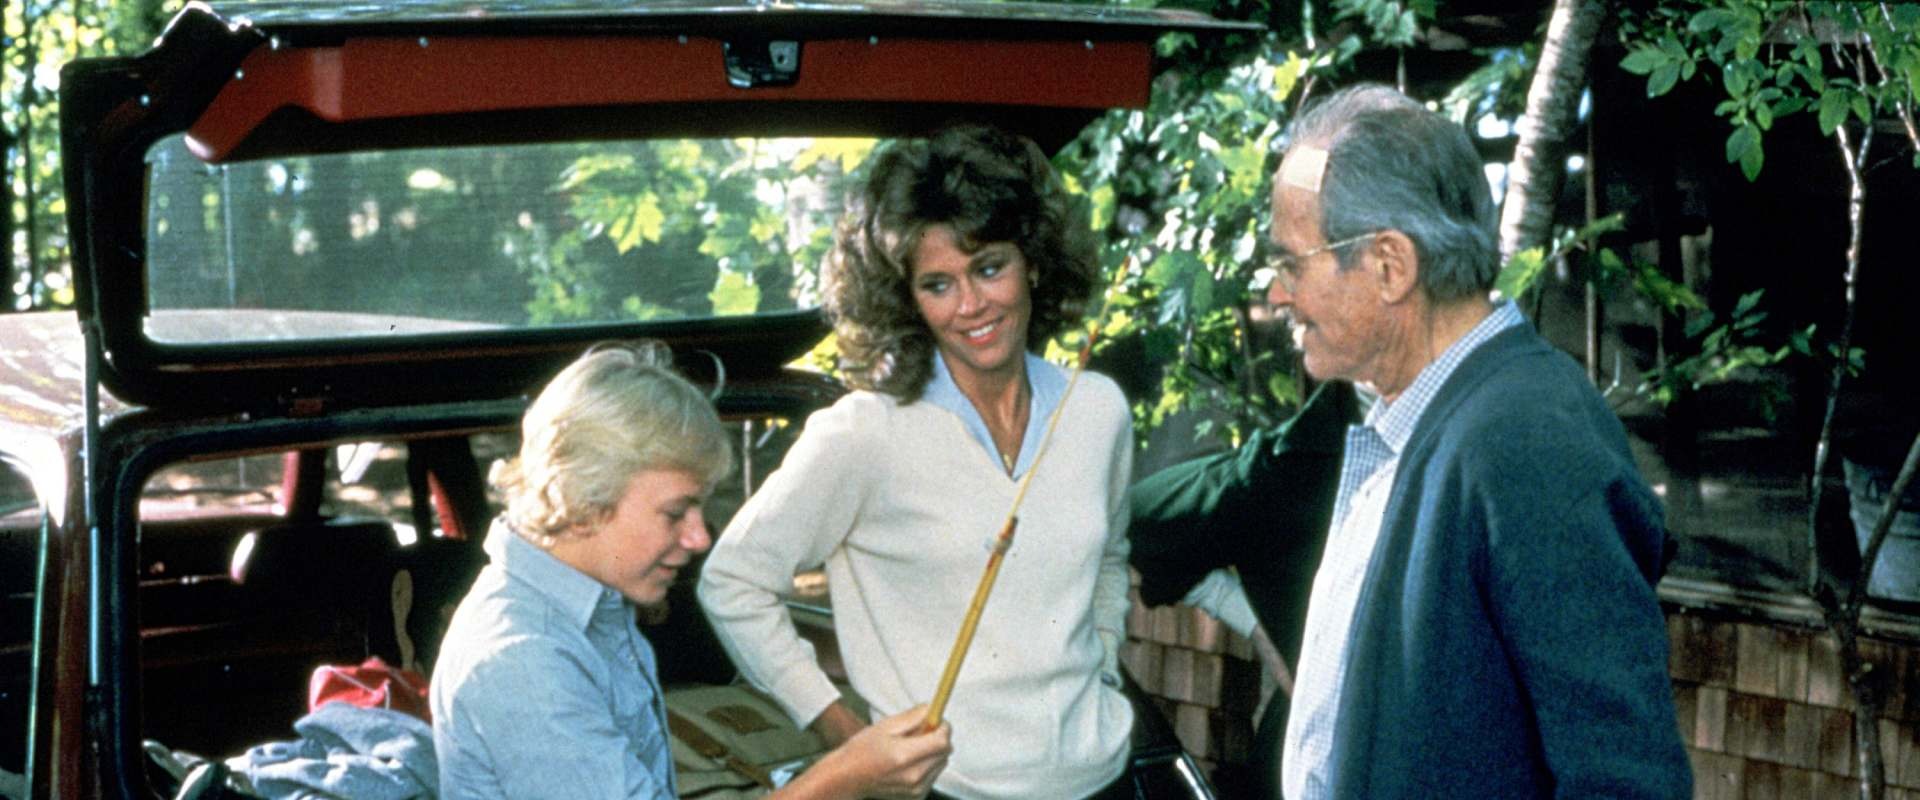 La Maison du lac : Jane Fonda a eu du mal à tourner cette scène poignante face à son père Henry